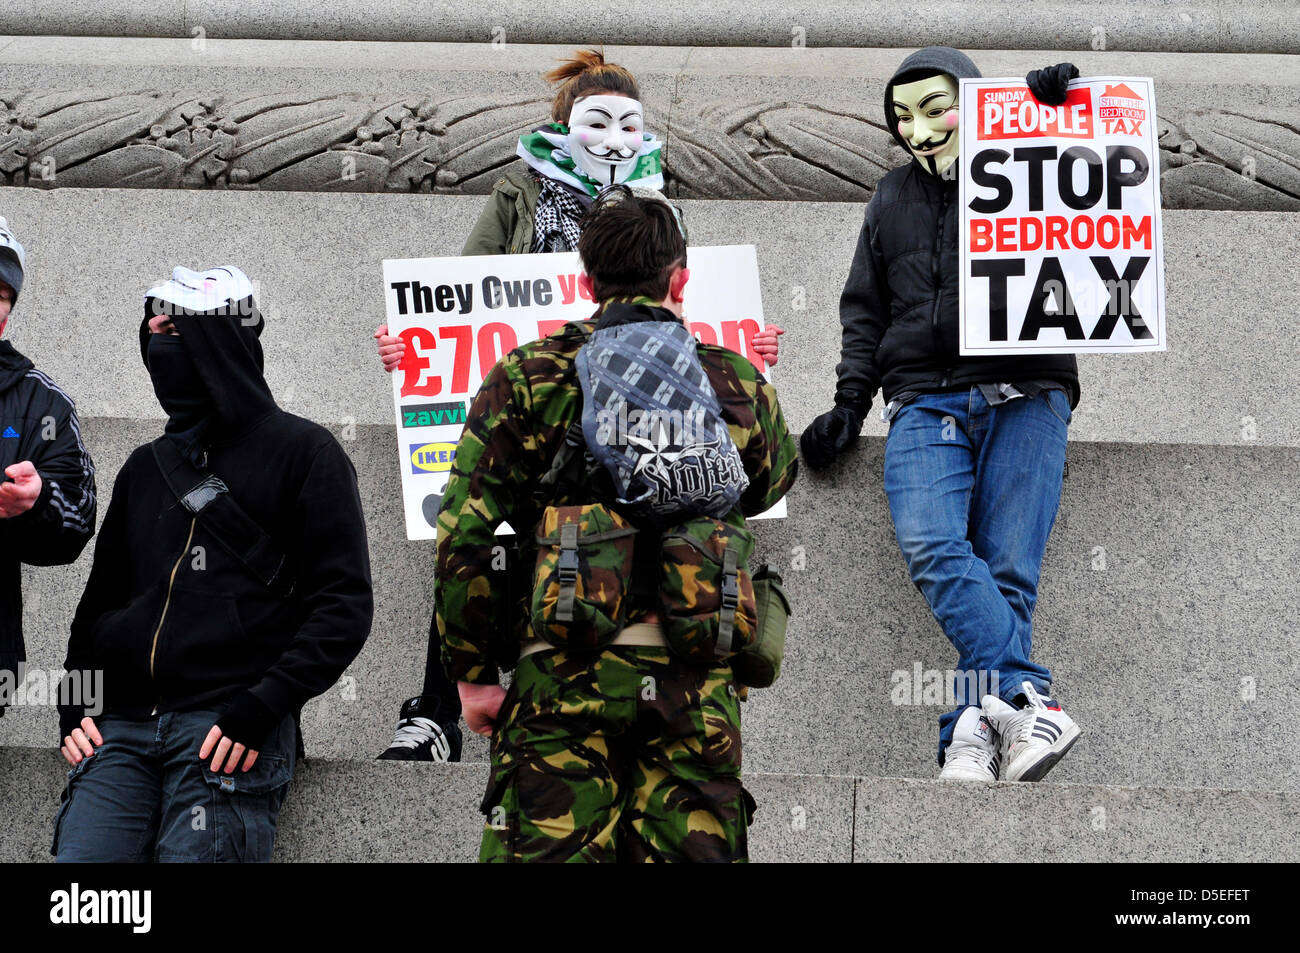 Les manifestants portant des masques anonyme à une protestation contre la taxe de chambre à coucher. Banque D'Images